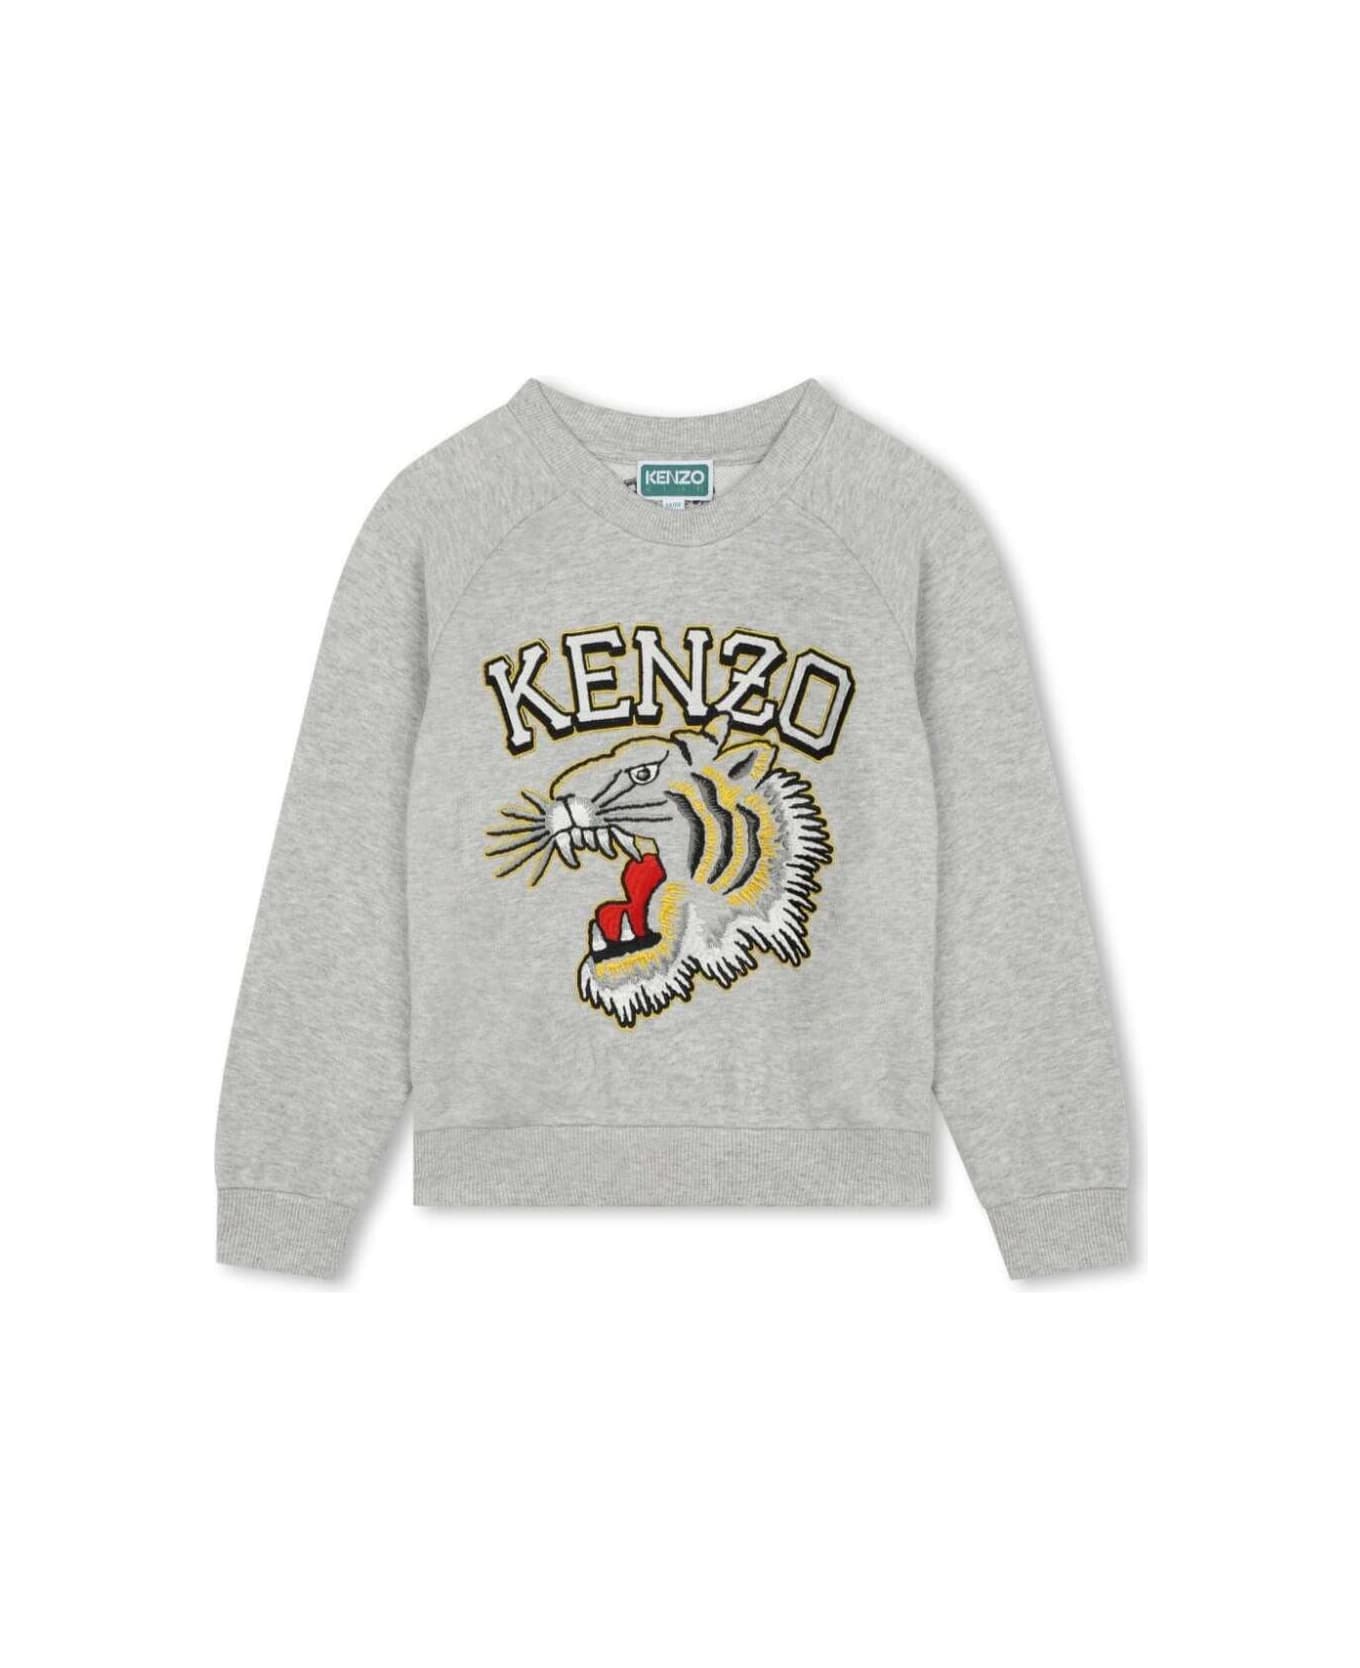 Kenzo Kids K60323a47 - Grey